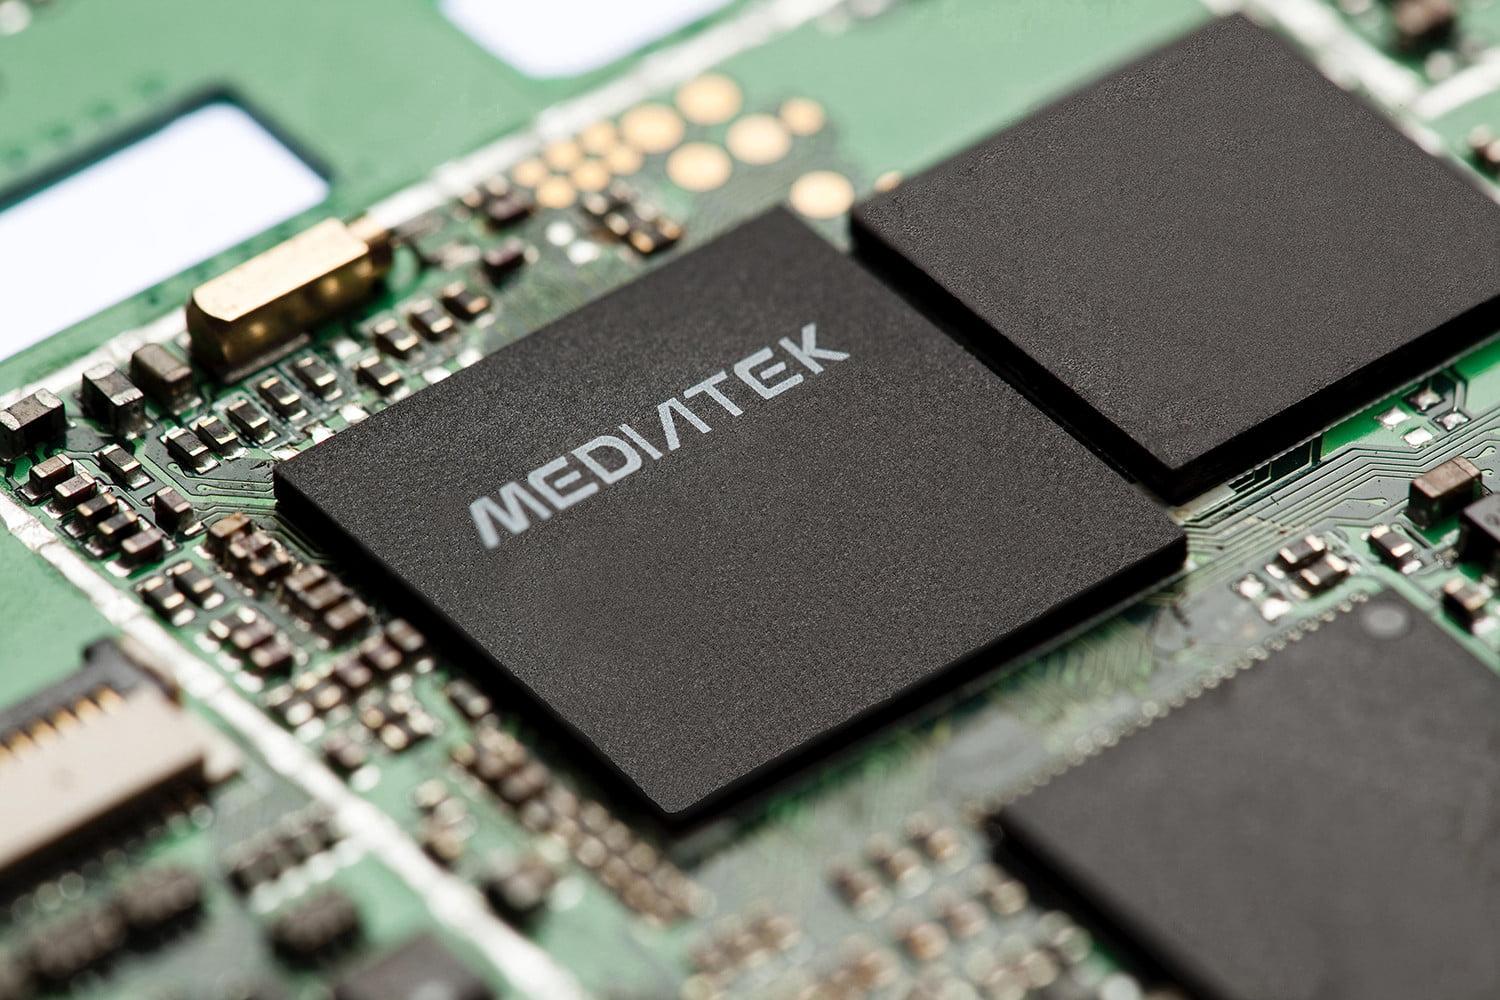 شركة MediaTek - أهم الشركات التي ساهمت في الوصول لتقنيات الجيل الخامس 5G